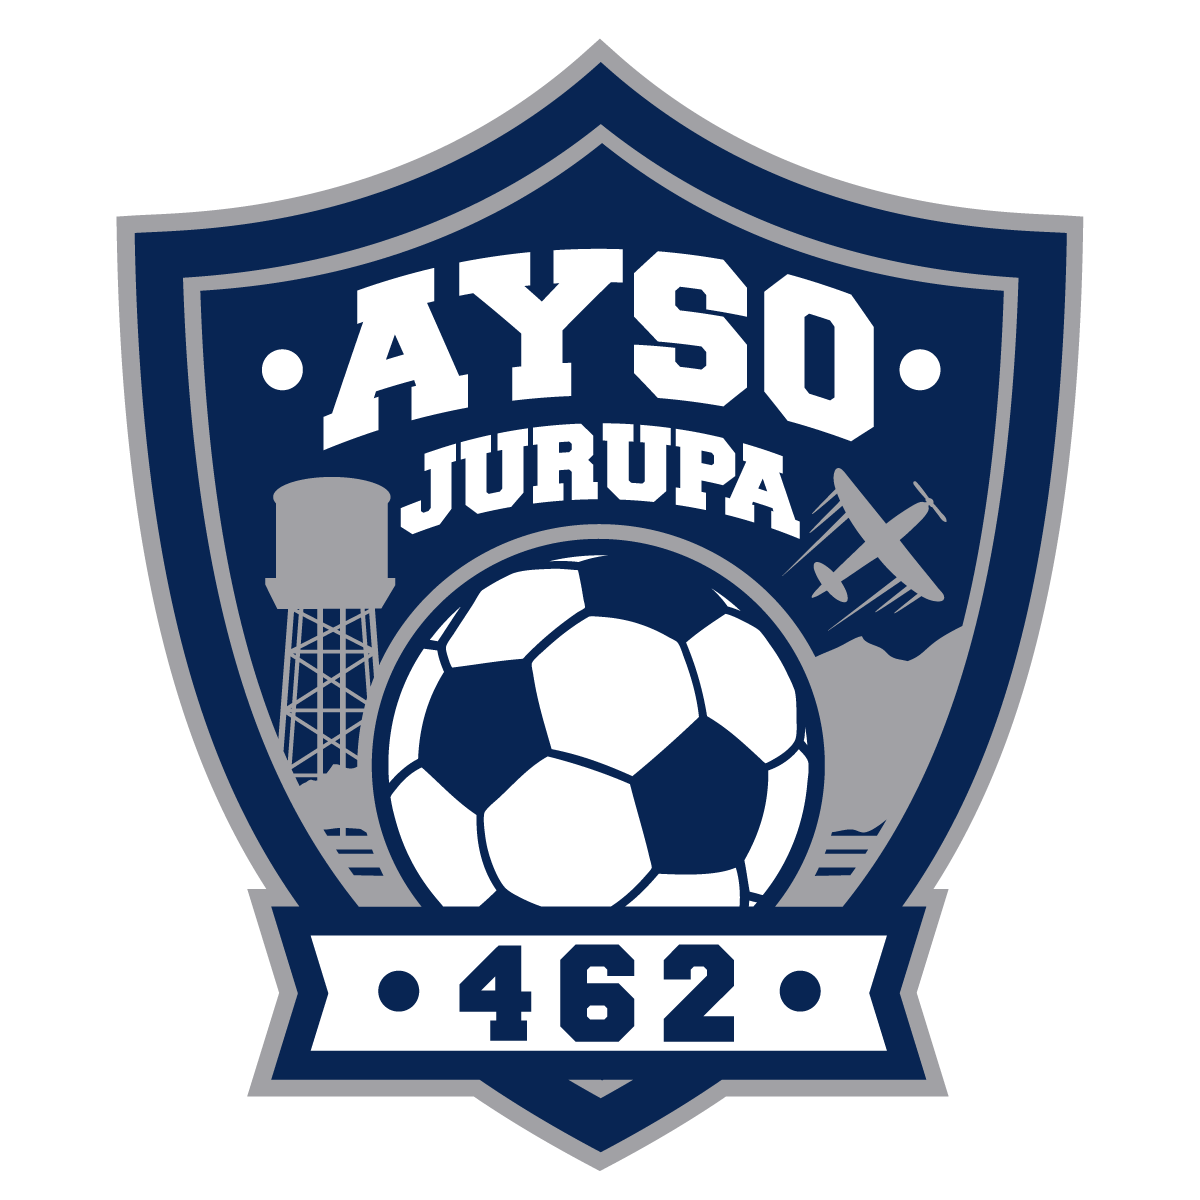 Jurupa AYSO Region 462